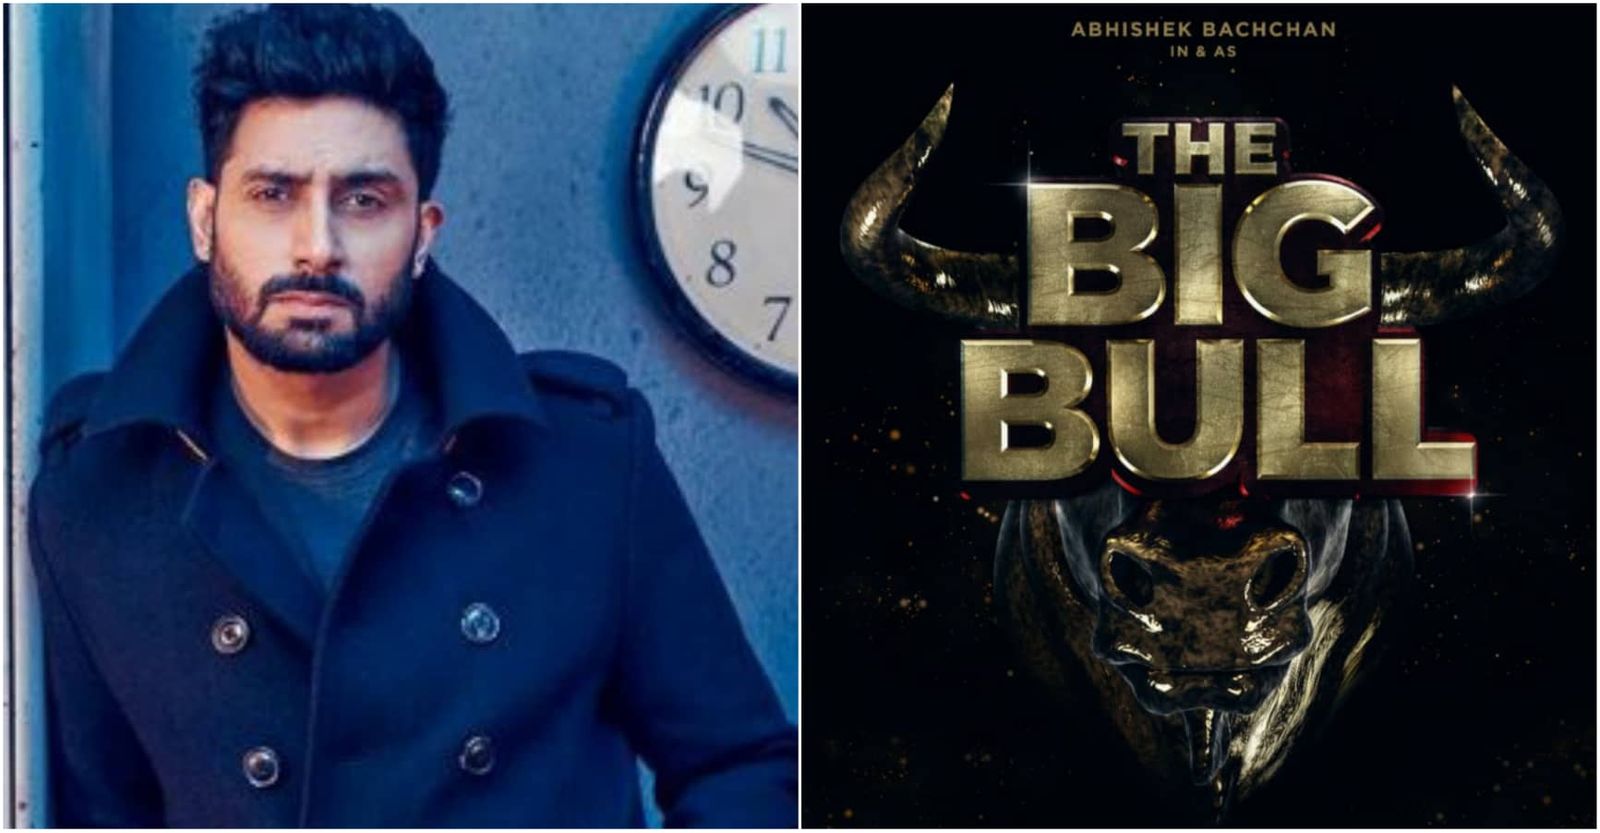 अभिषेक बच्चन बनेंगे 'द बिग बुल', अजय देवगन प्रोड्यूस कर रहे हैं फिल्म!